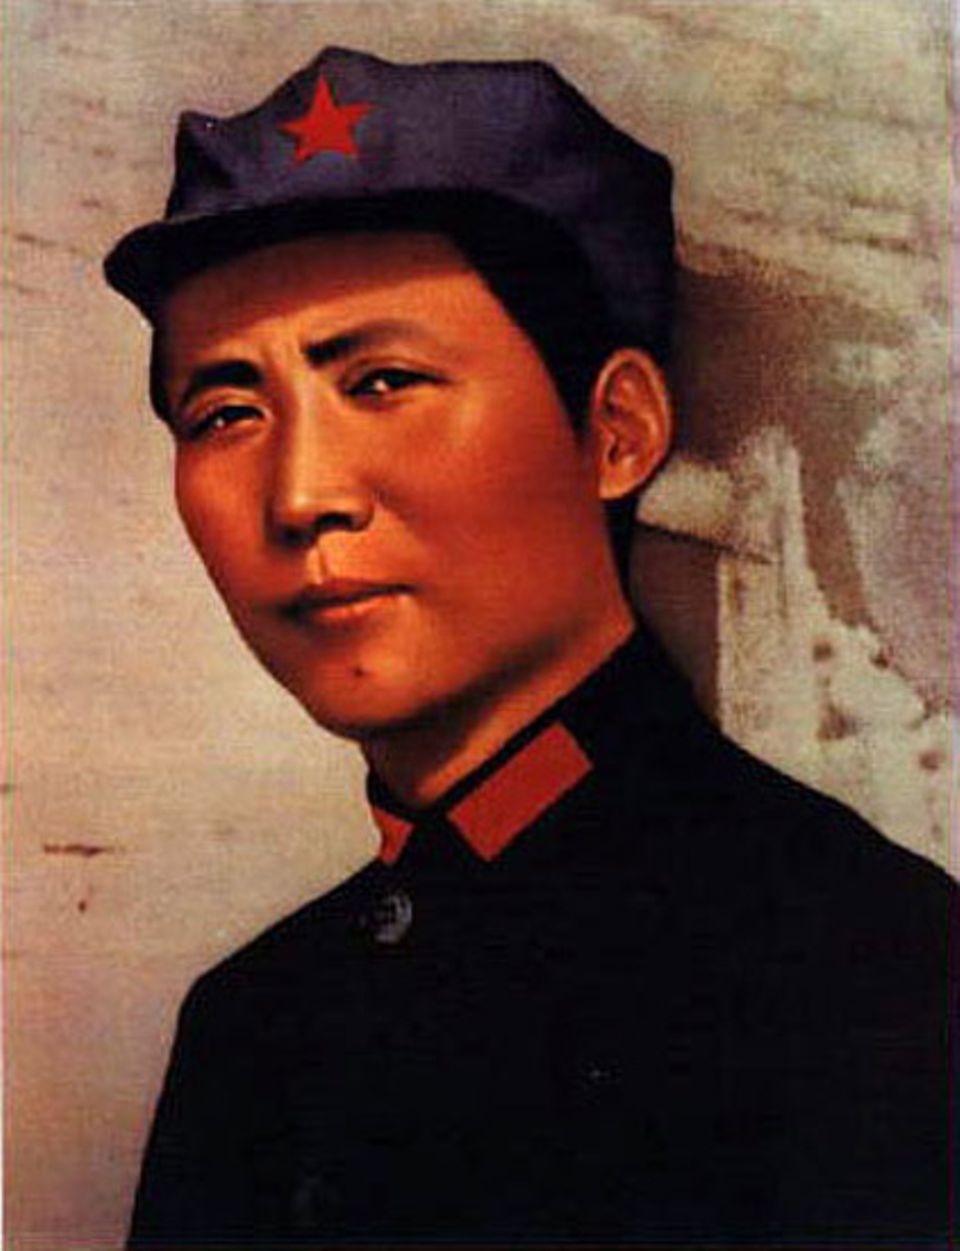 Um in China einen Machtwechsel herbeizuführen, ist Mao - hier 1936 in der Uniform der Roten Armee - jedes Mittel recht. So lässt er etwa Bauern ausplündern, um eine Truppen zu ernähren